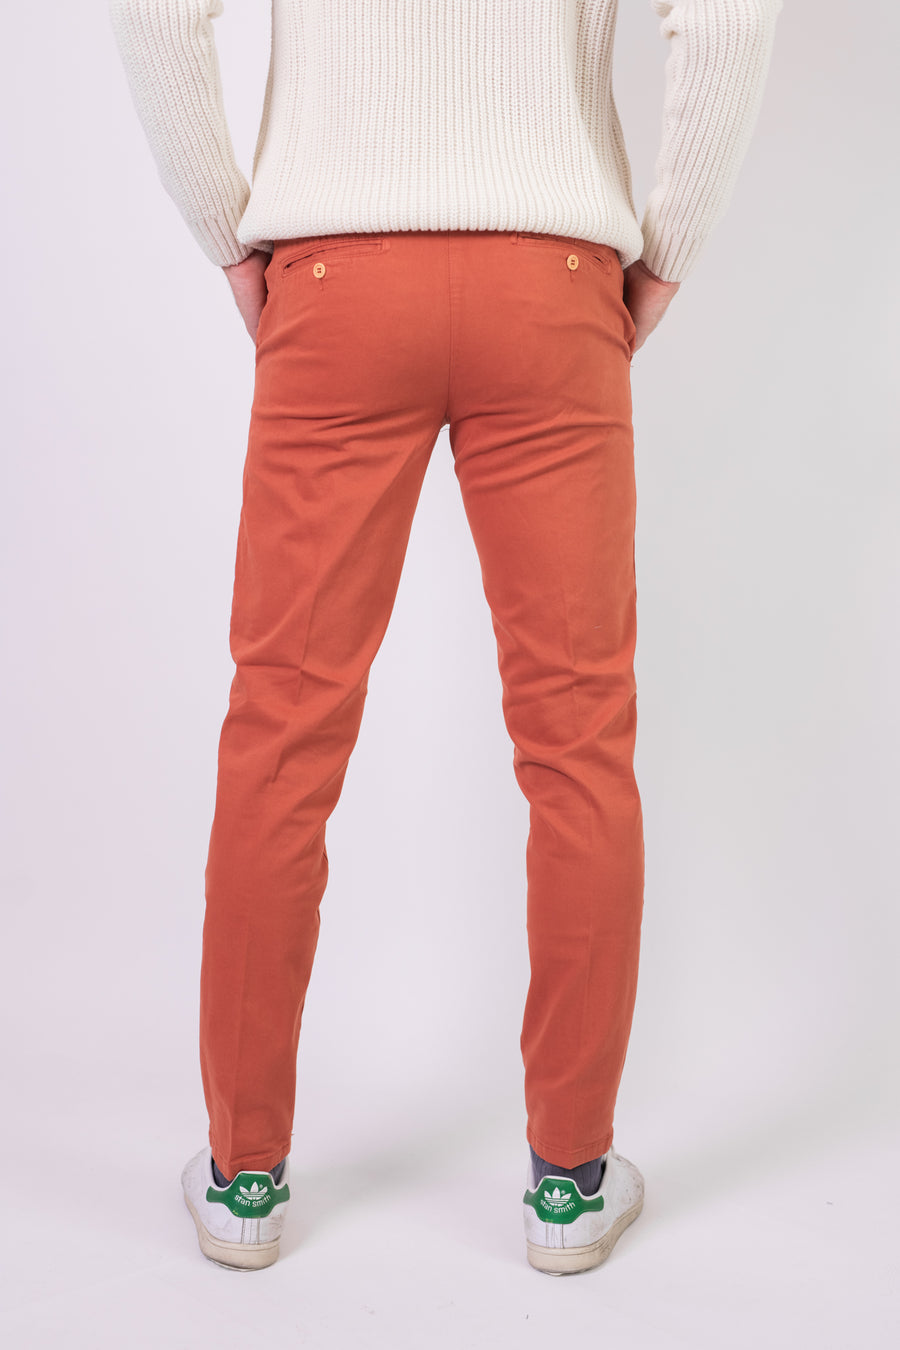 Pantalone Gabardina Bielastica Arancio